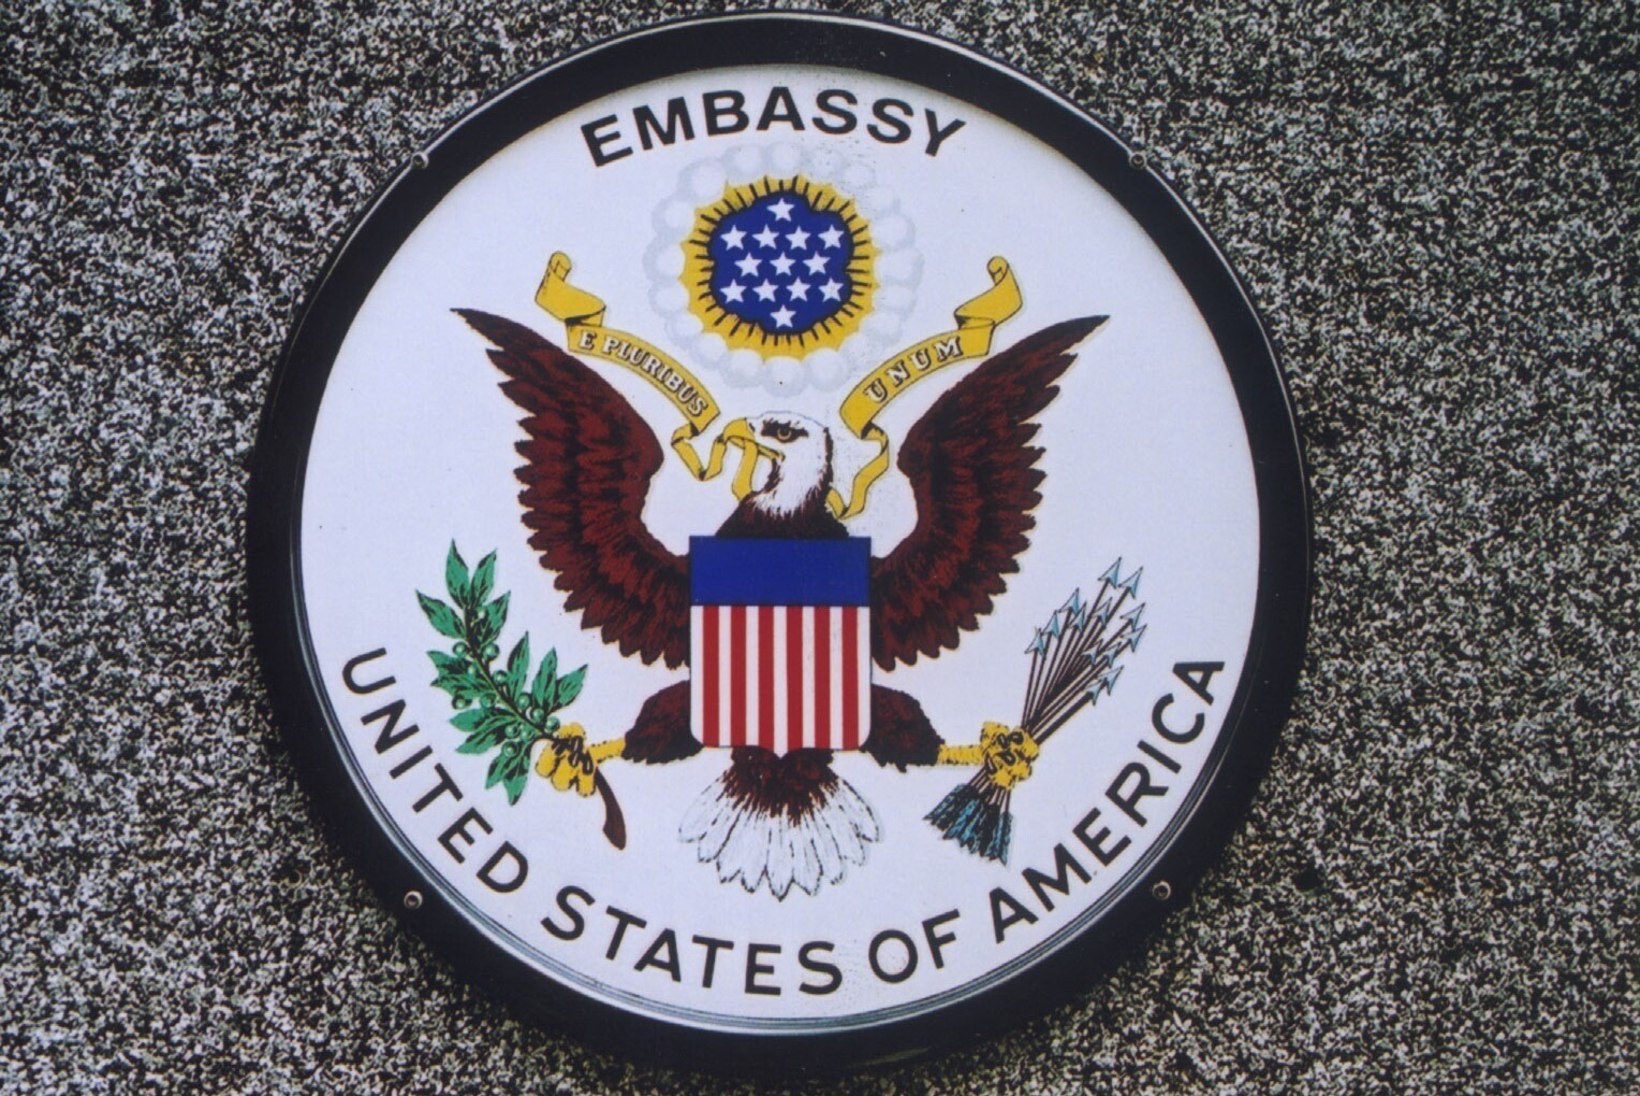 USA saatkond rabi ründamisest: kui vihakõnele ei reageerita, siis võib see viia ohtliku käitumiseni